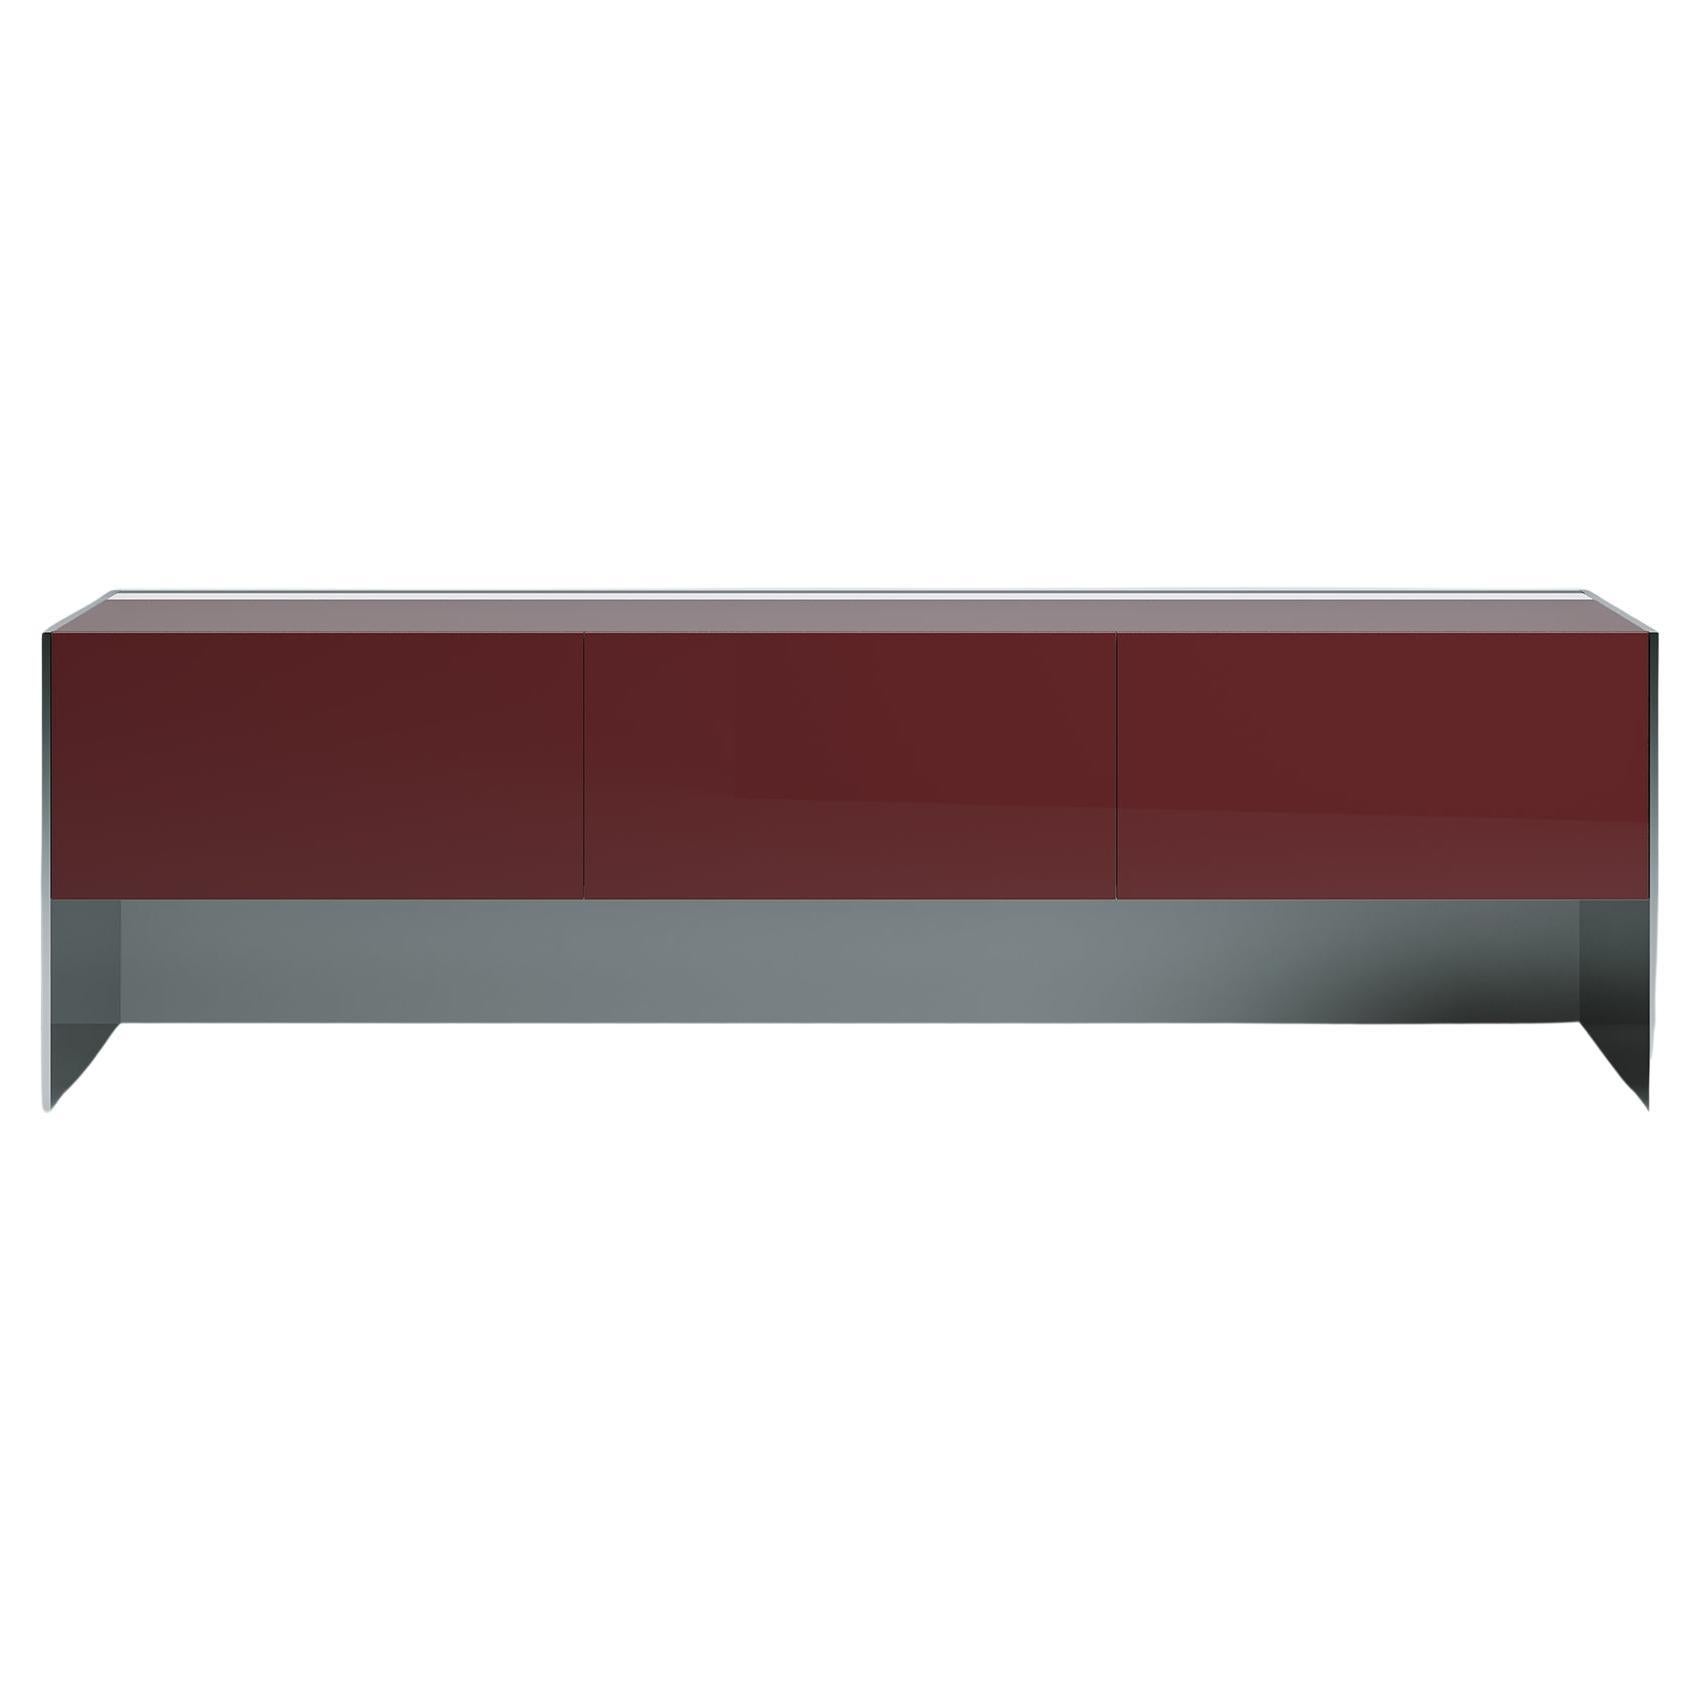 Acerbis Stahl-Sideboard mit burgunderfarbener, glänzend lackierter Platte und Türen mit Stahlseiten